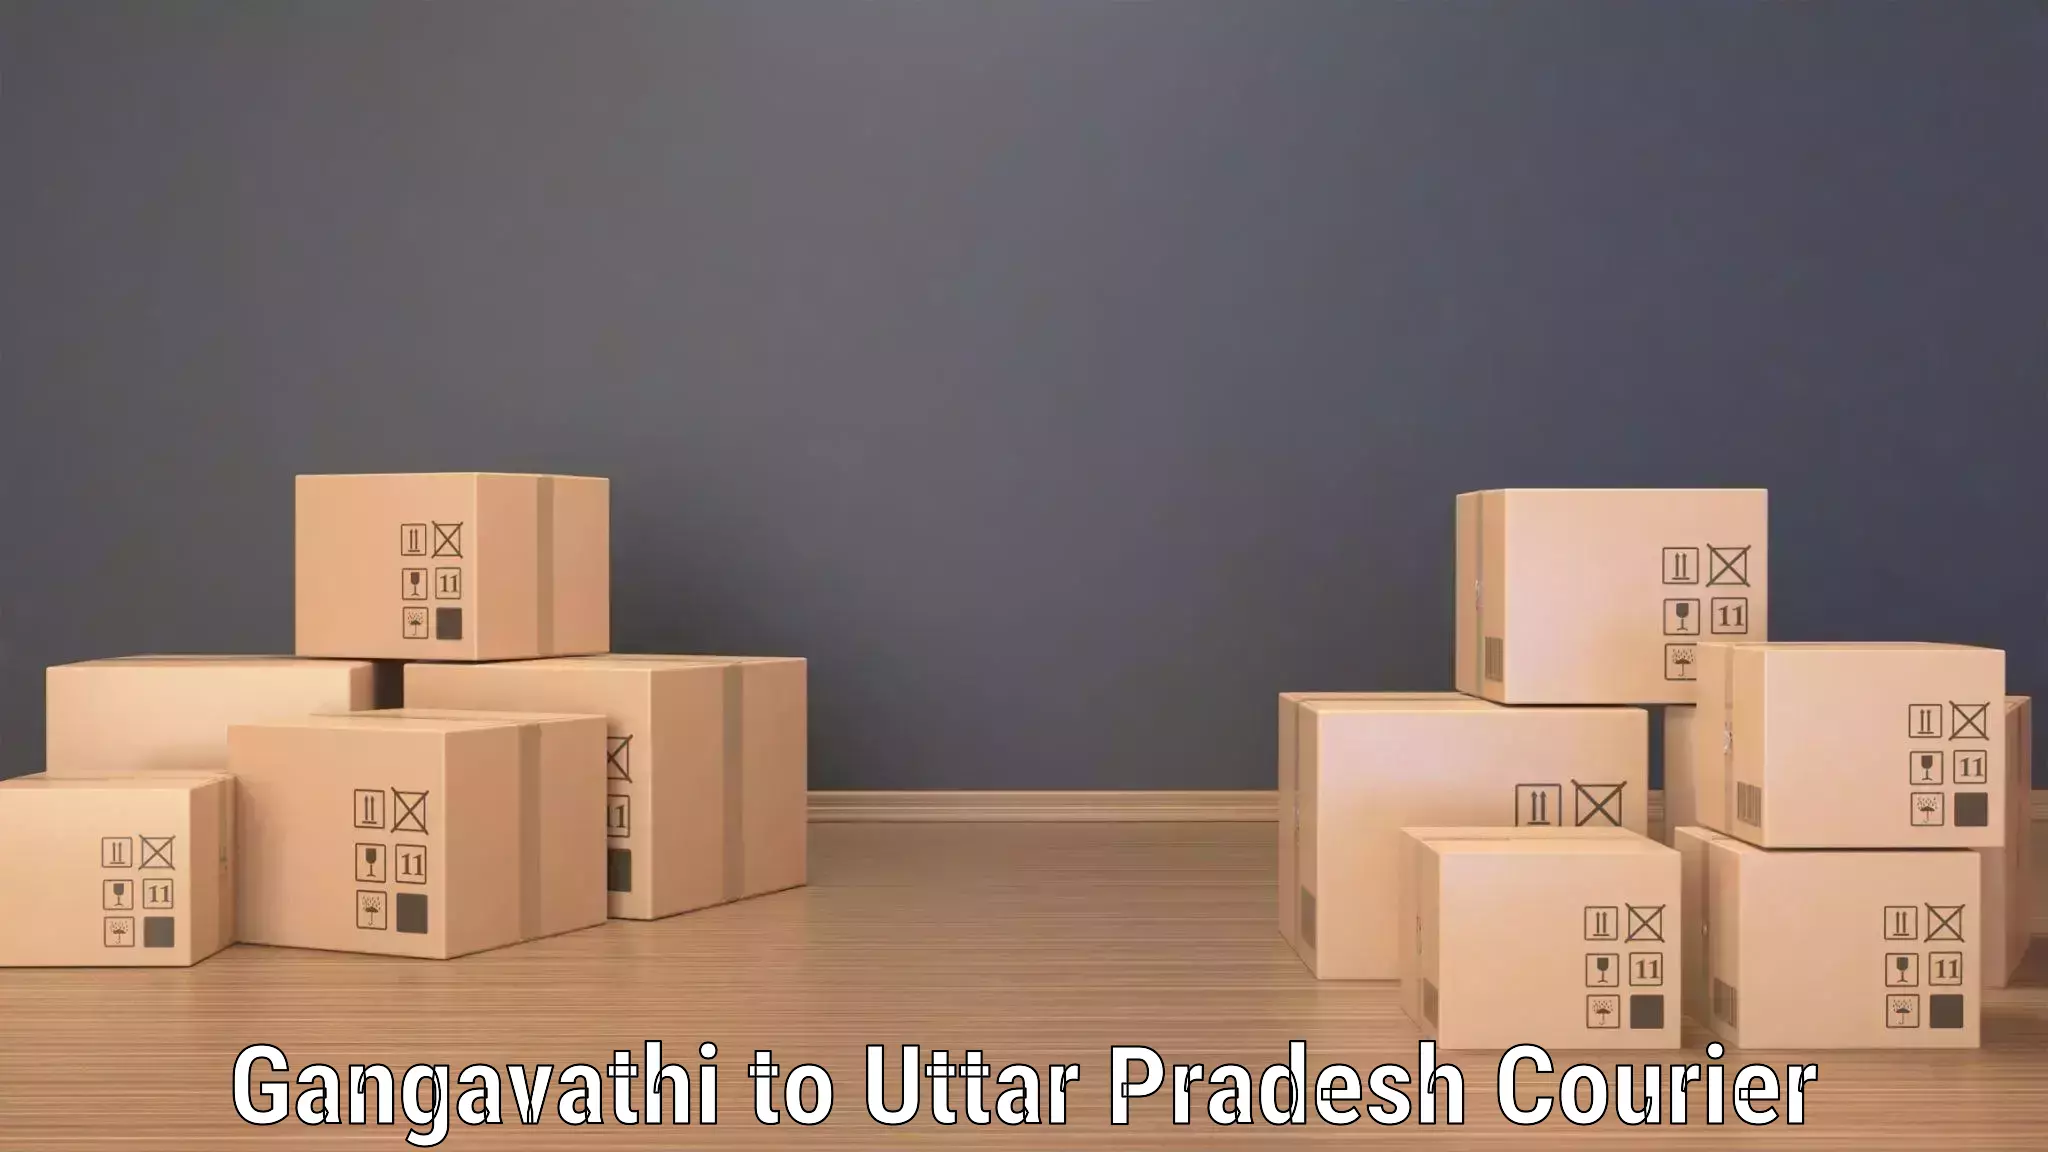 Package tracking Gangavathi to Pilibhit